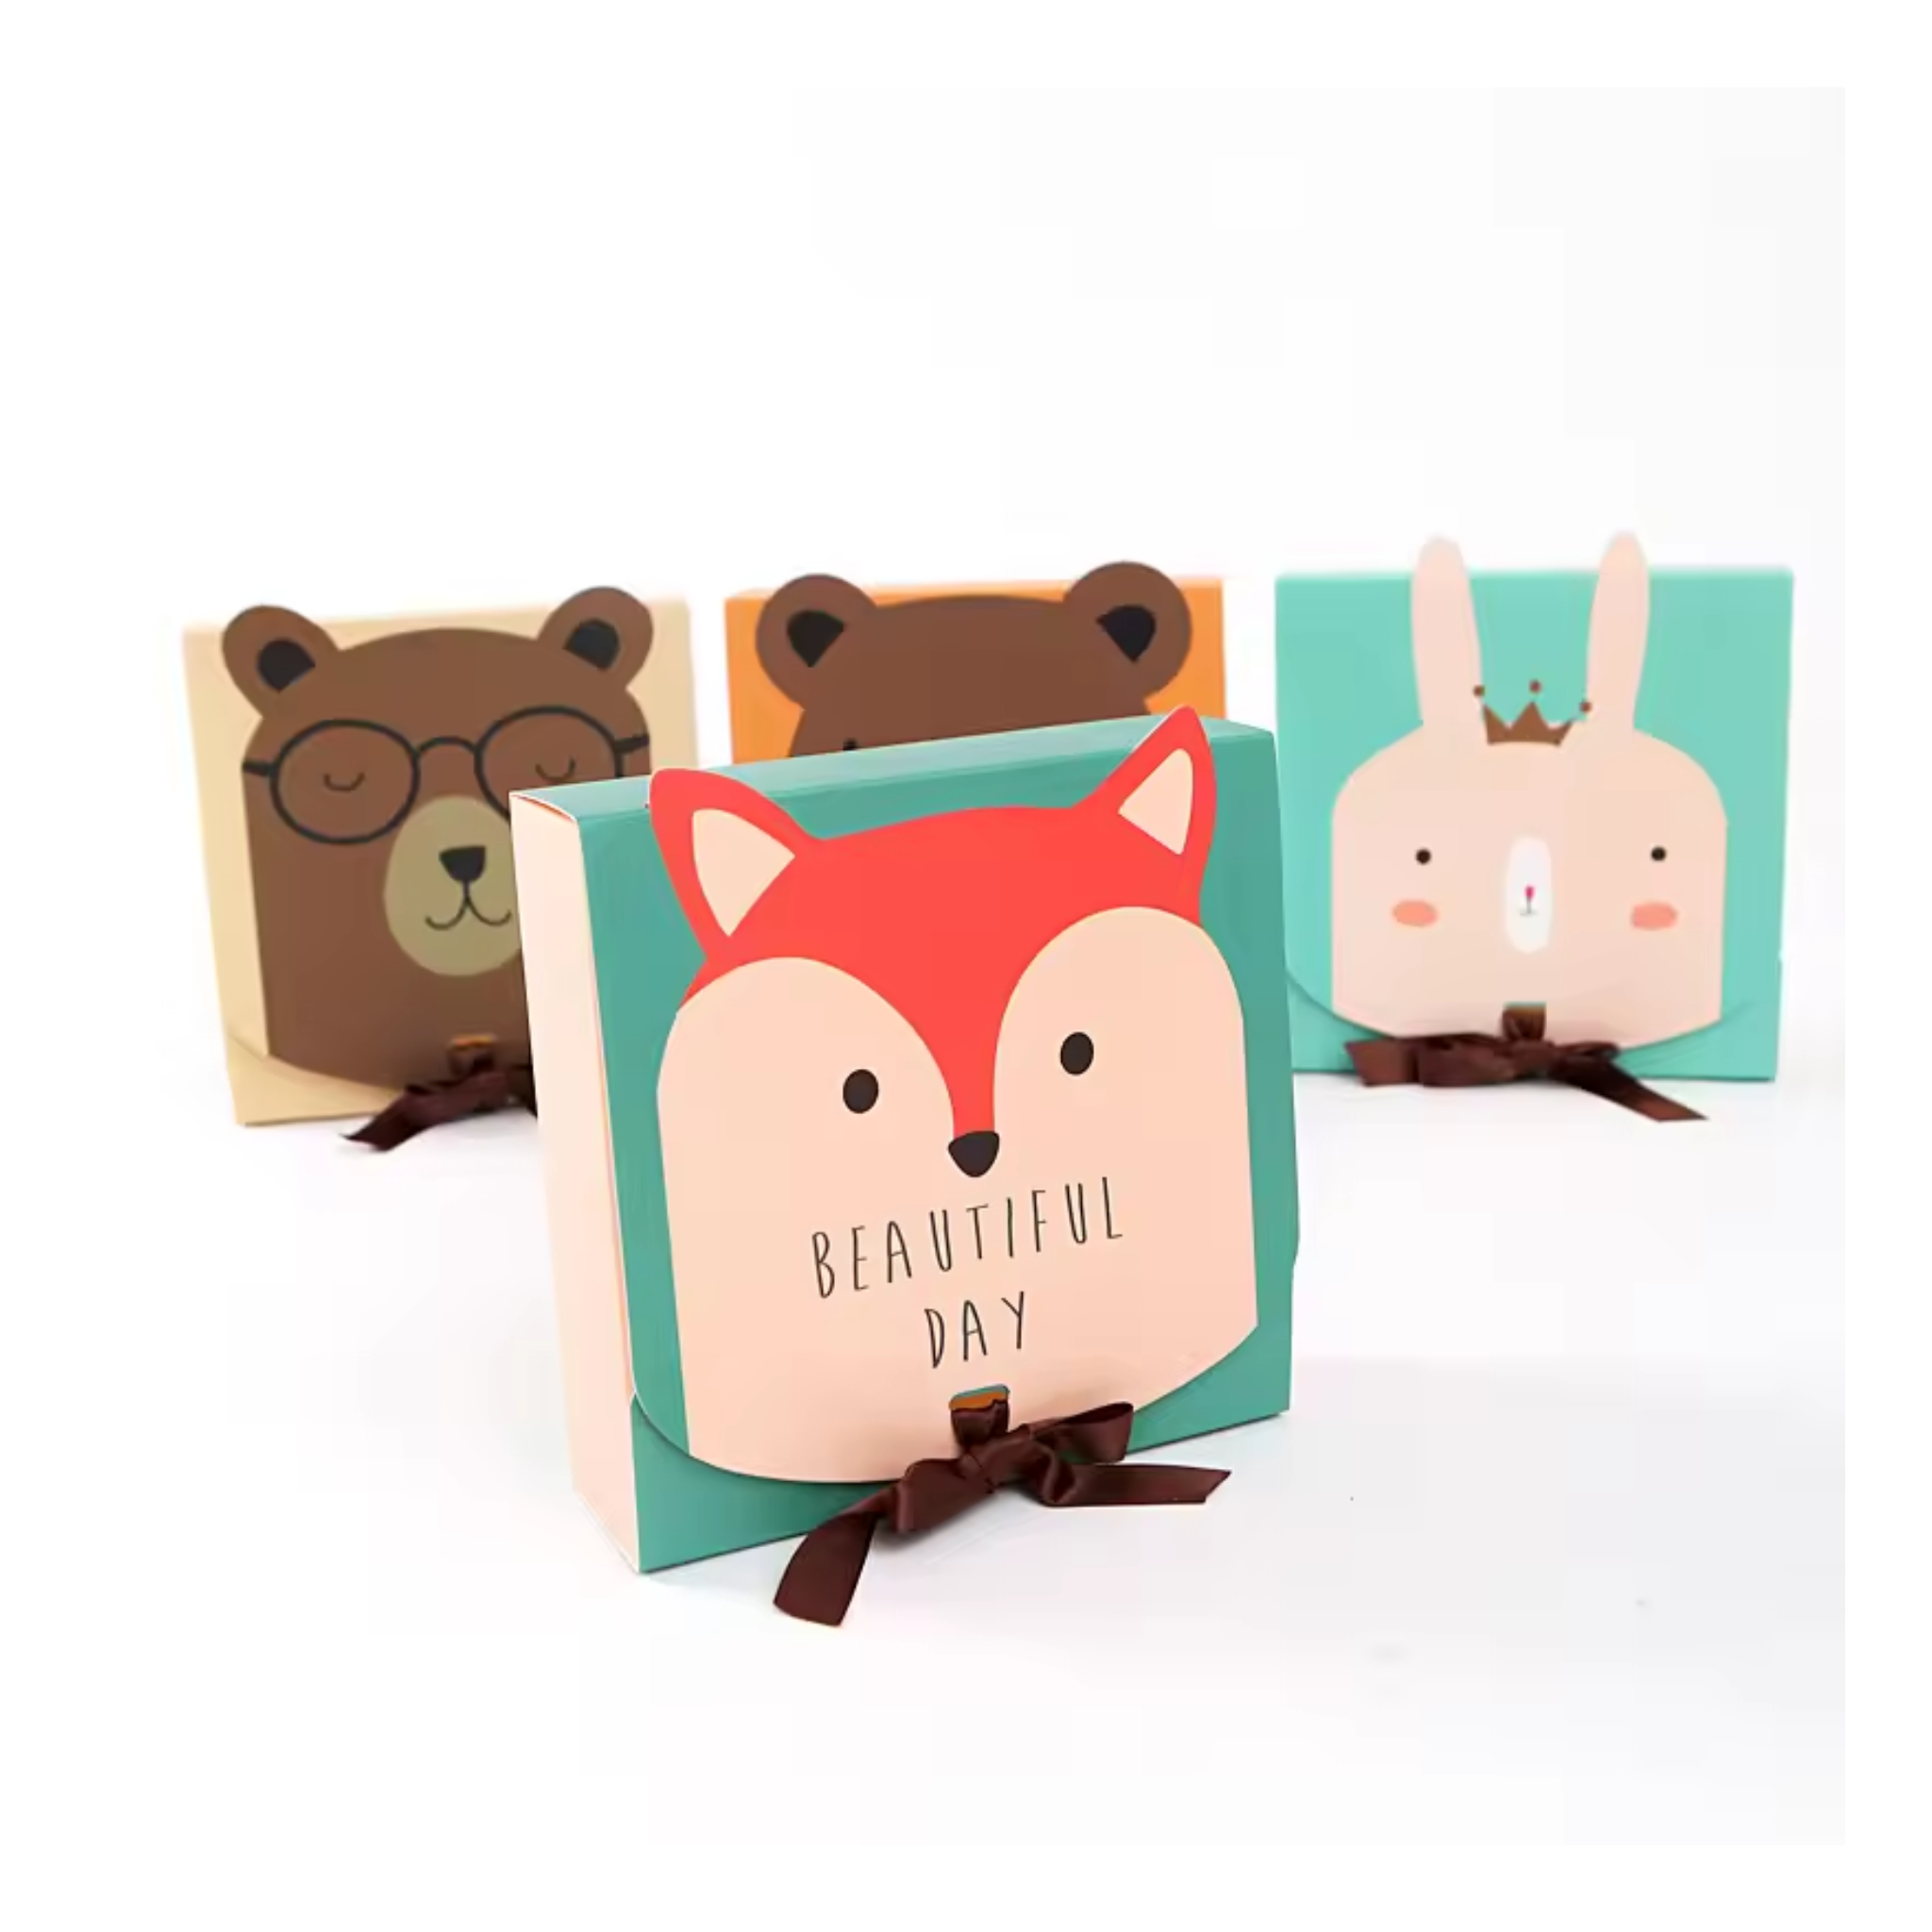 Safari Animal Themed Candy Gift Boxes Set